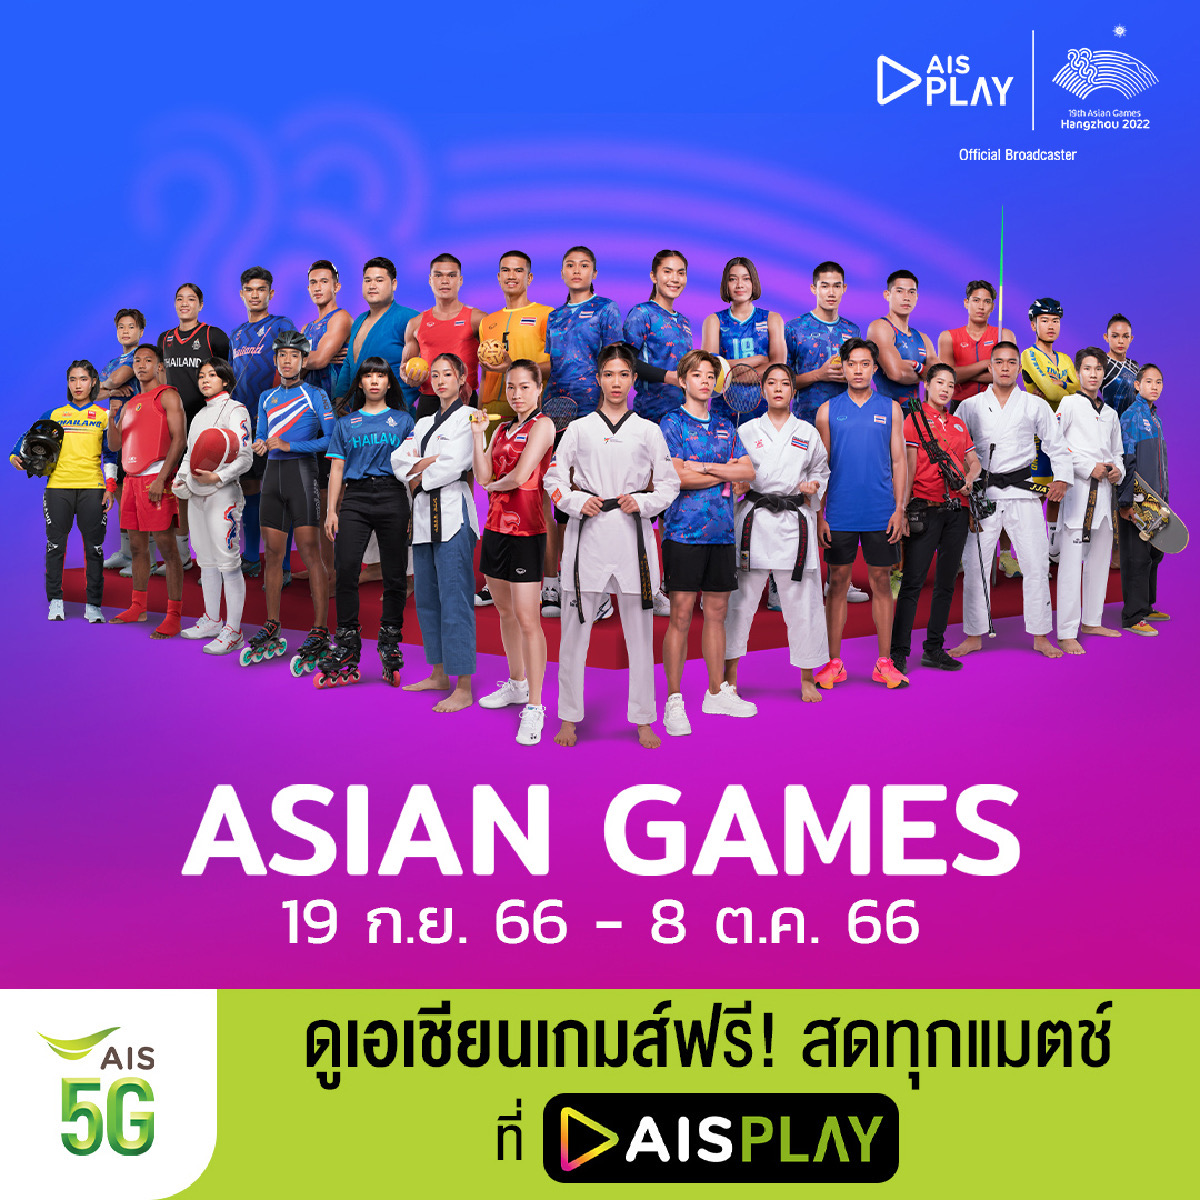 AIS PLAY ชวนลูกค้าและคนไทยส่งใจเชียร์ทีมช้างศึกและทีมลูกยางชายไทยกับมหกรรมกีฬา “เอเชียนเกมส์ครั้งที่ 19 หางโจว 2022”